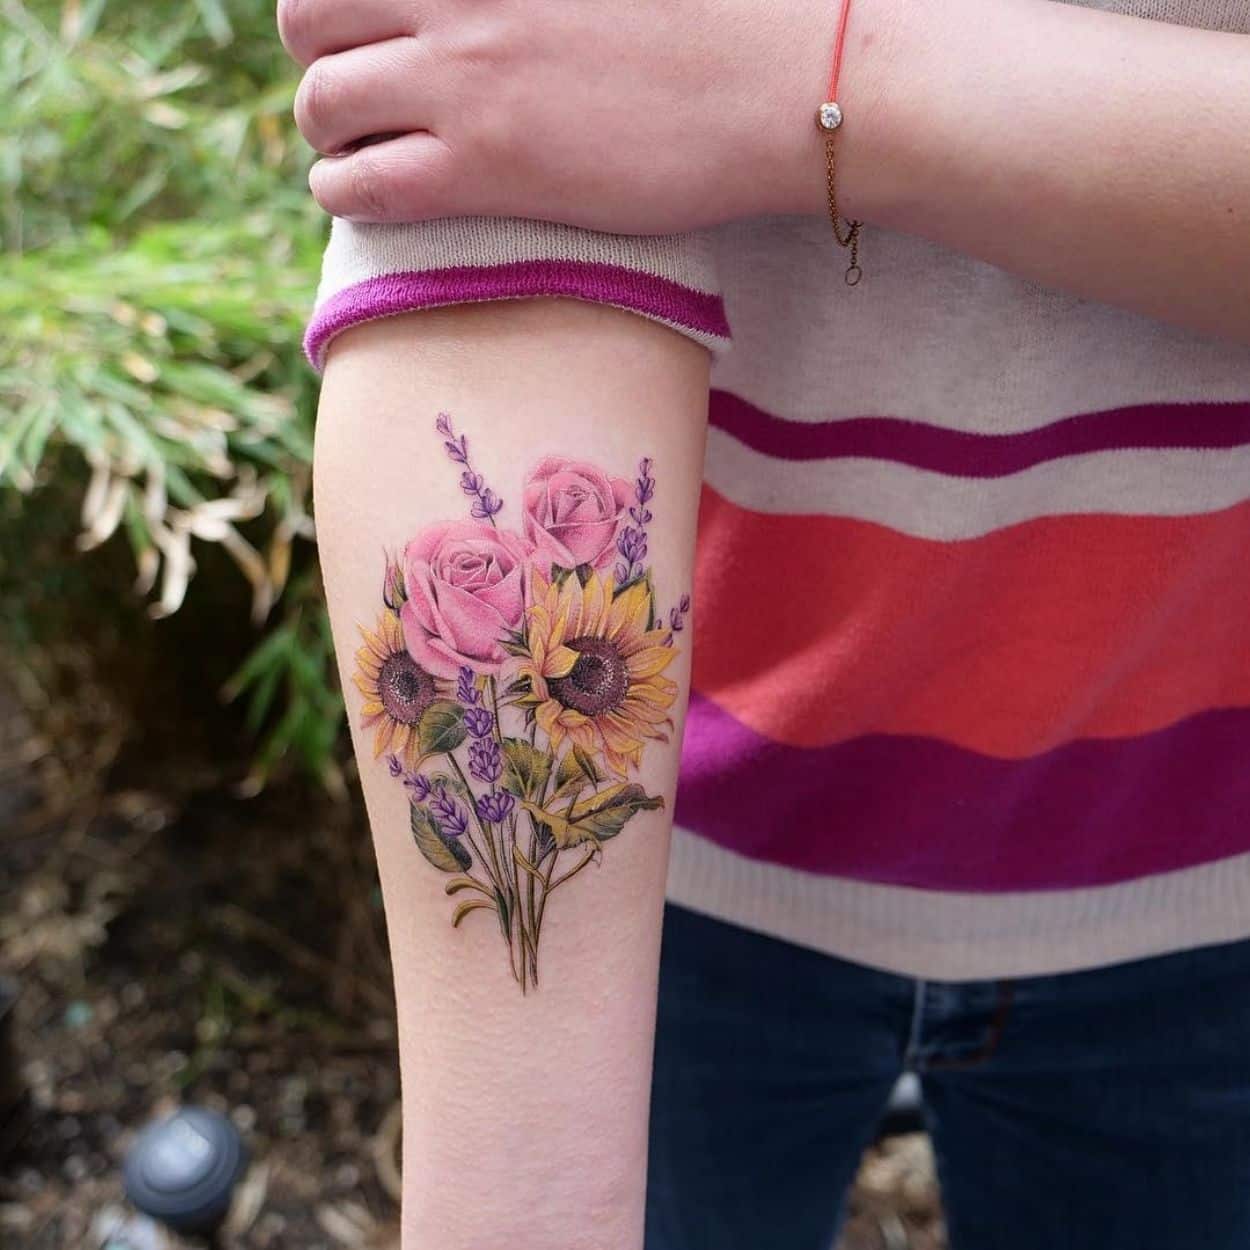 tatuagem feminina no braço - imagem de inspiração